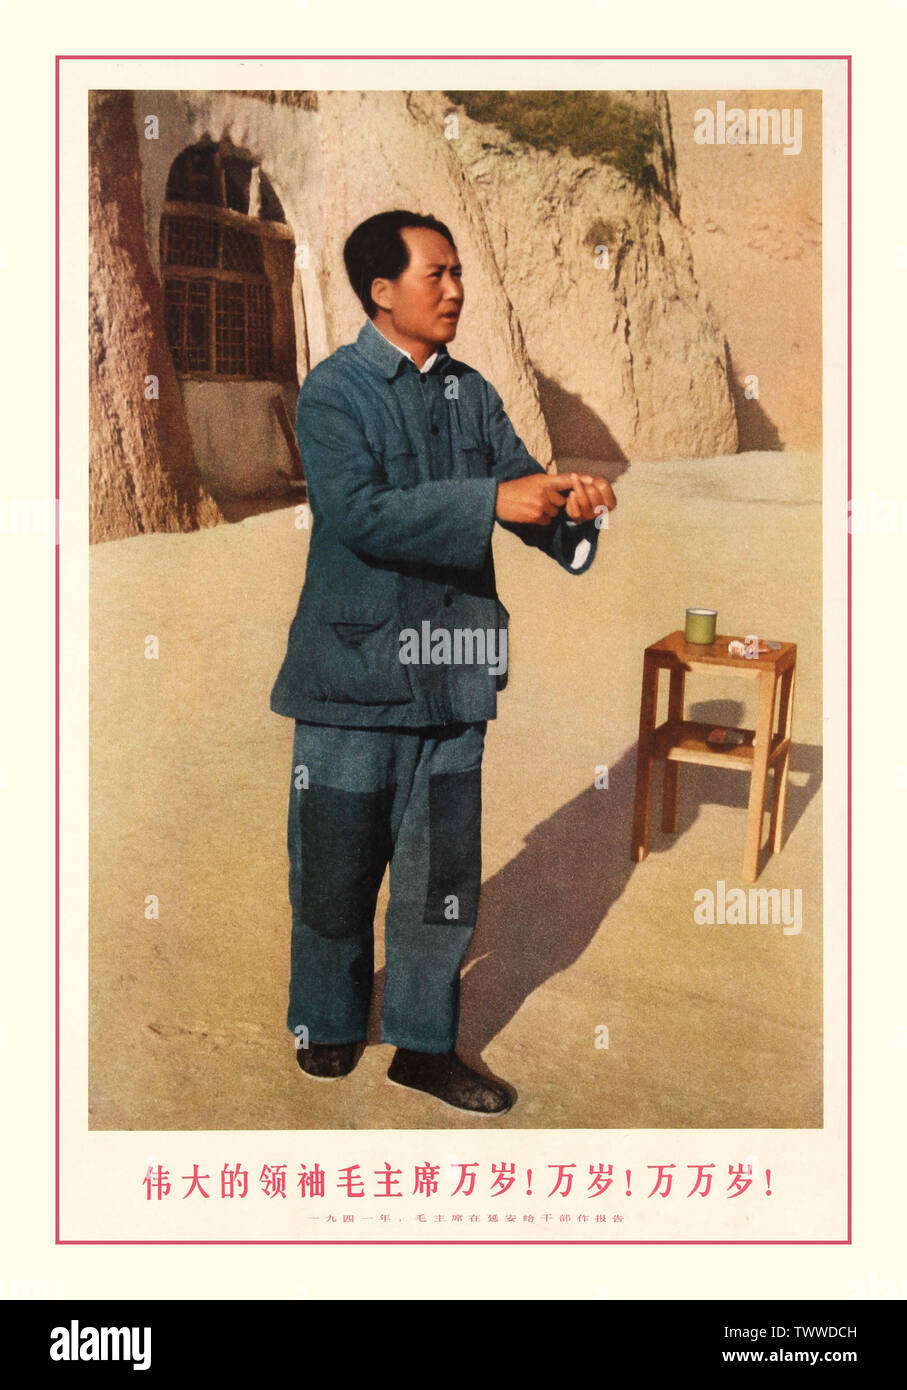 Anni Sessanta il Presidente Mao Vintage Propaganda cinese poster pubblicato nel 1969 con una fotografia di un giovane Mao Zedong, offrendo un rapporto di quadri in Yan'an, 1941. Cina, 1969 Mao Zedong (26 dicembre 1893 - 9 settembre 1976), noto anche come il Presidente Mao, era un comunista cinese rivoluzionario che divenne il padre fondatore della repubblica popolare di Cina e che egli ha stabilito come il presidente del Partito Comunista della Cina dalla sua costituzione nel 1949 fino alla sua morte nel 1976. Le sue teorie, strategie militari e politiche sono collettivamente noti come il maoismo. Foto Stock